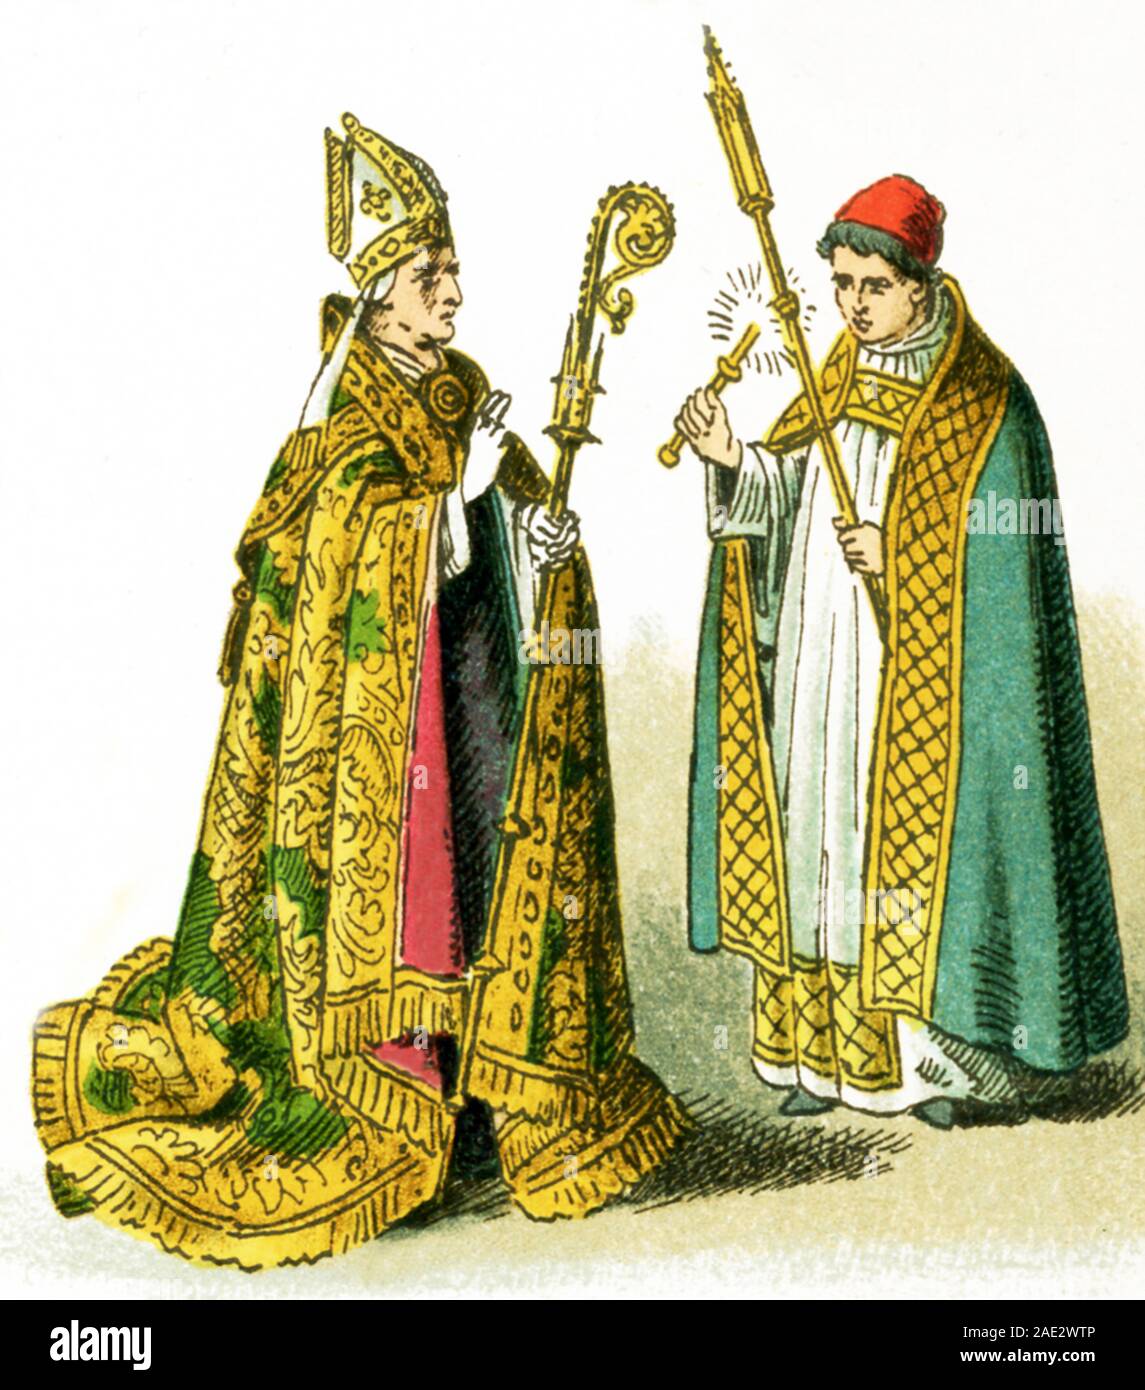 Traje de obispo del siglo xix fotografías e imágenes de alta resolución -  Alamy